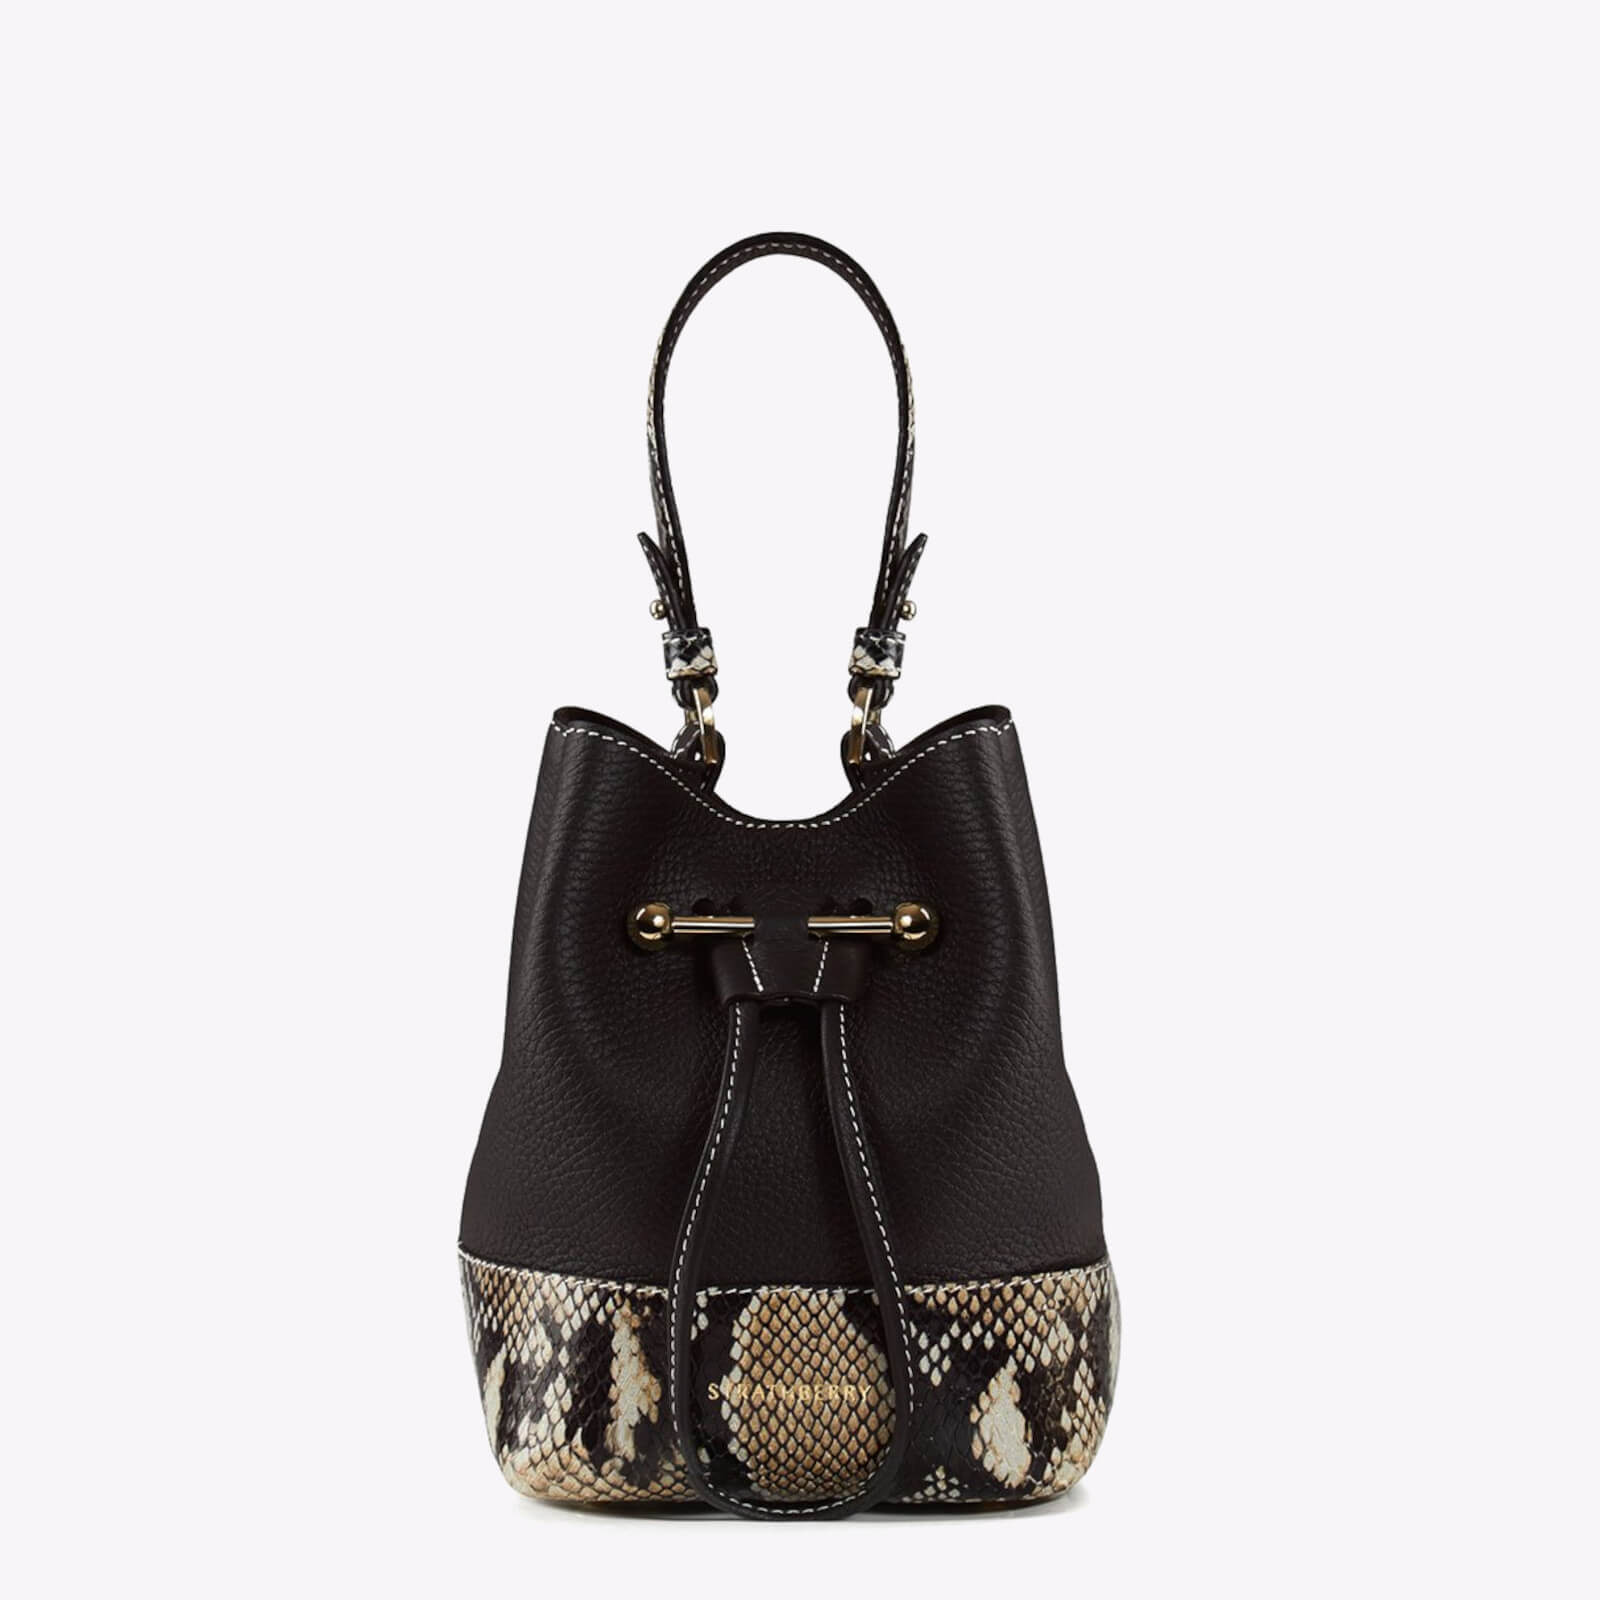 Strathberry Women's Lana Osette Bucket Bag - Black/Desert